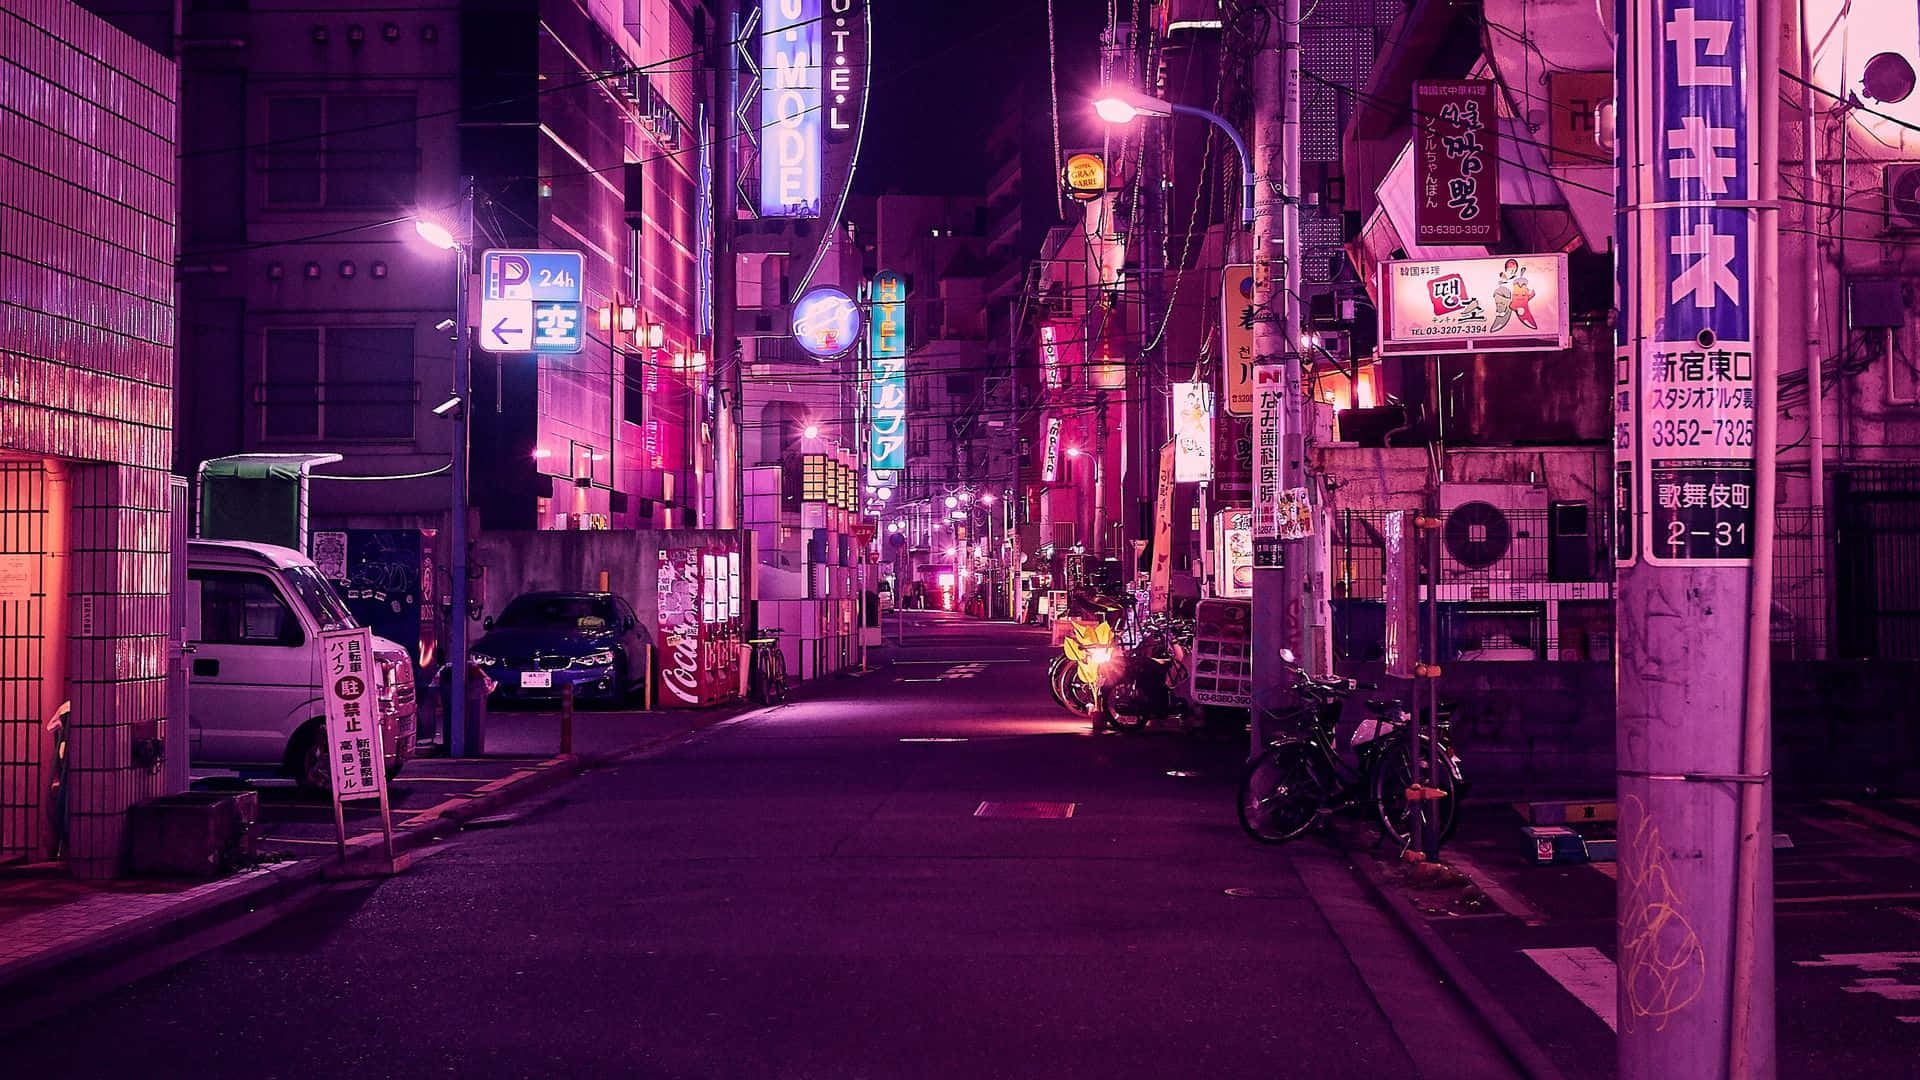 Sfondodi Tokyo Con Strada Illuminata Di Luci Viola.